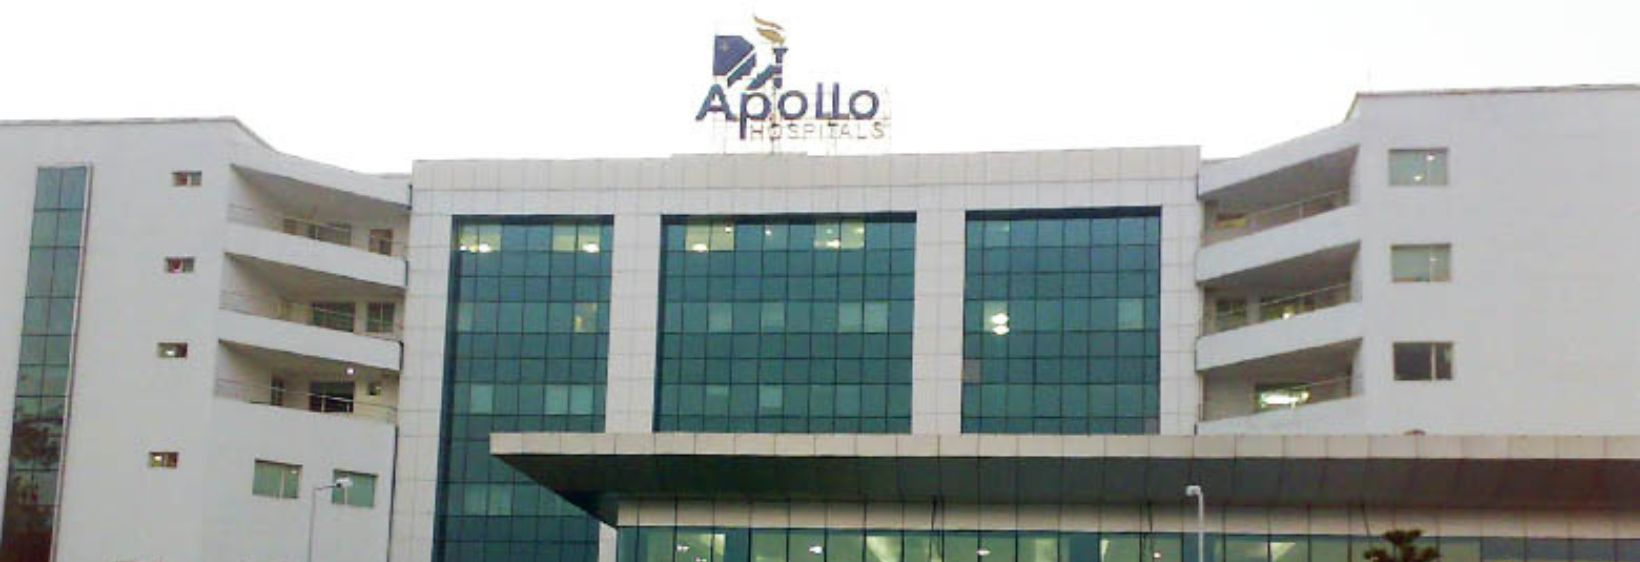 Apollo College of Nursing - Chennai